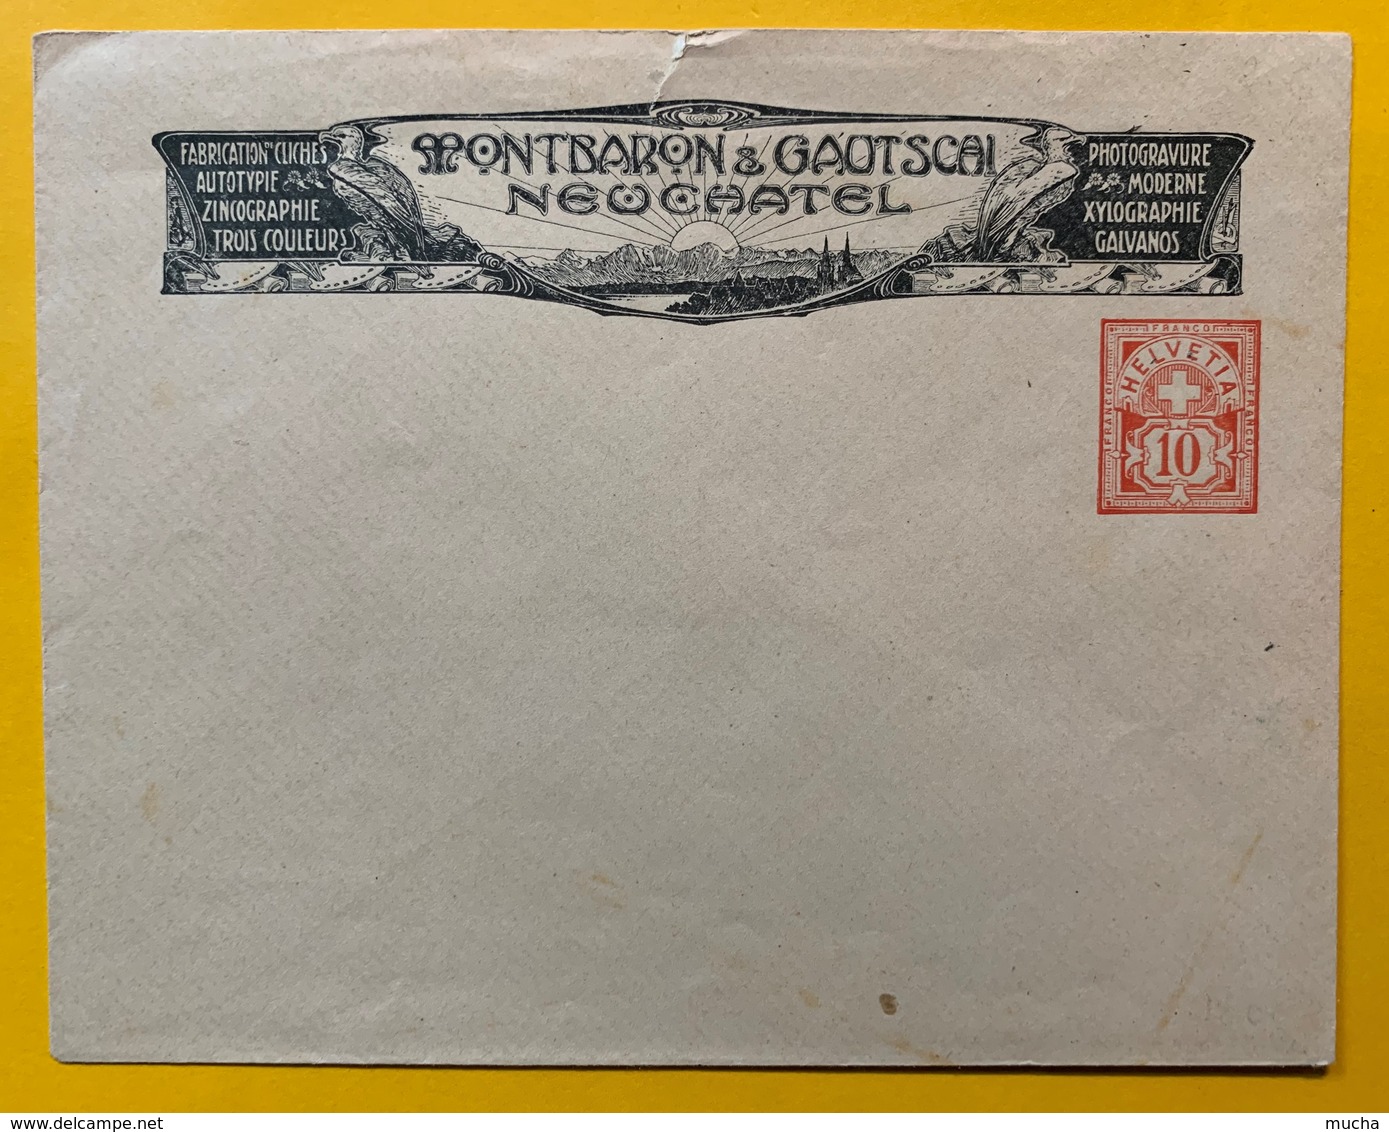 9786 -  Enveloppe Privée 10 Ct Rouge Neuve  Montbaron & Gautschi Neuchâtel Photogravure - Entiers Postaux